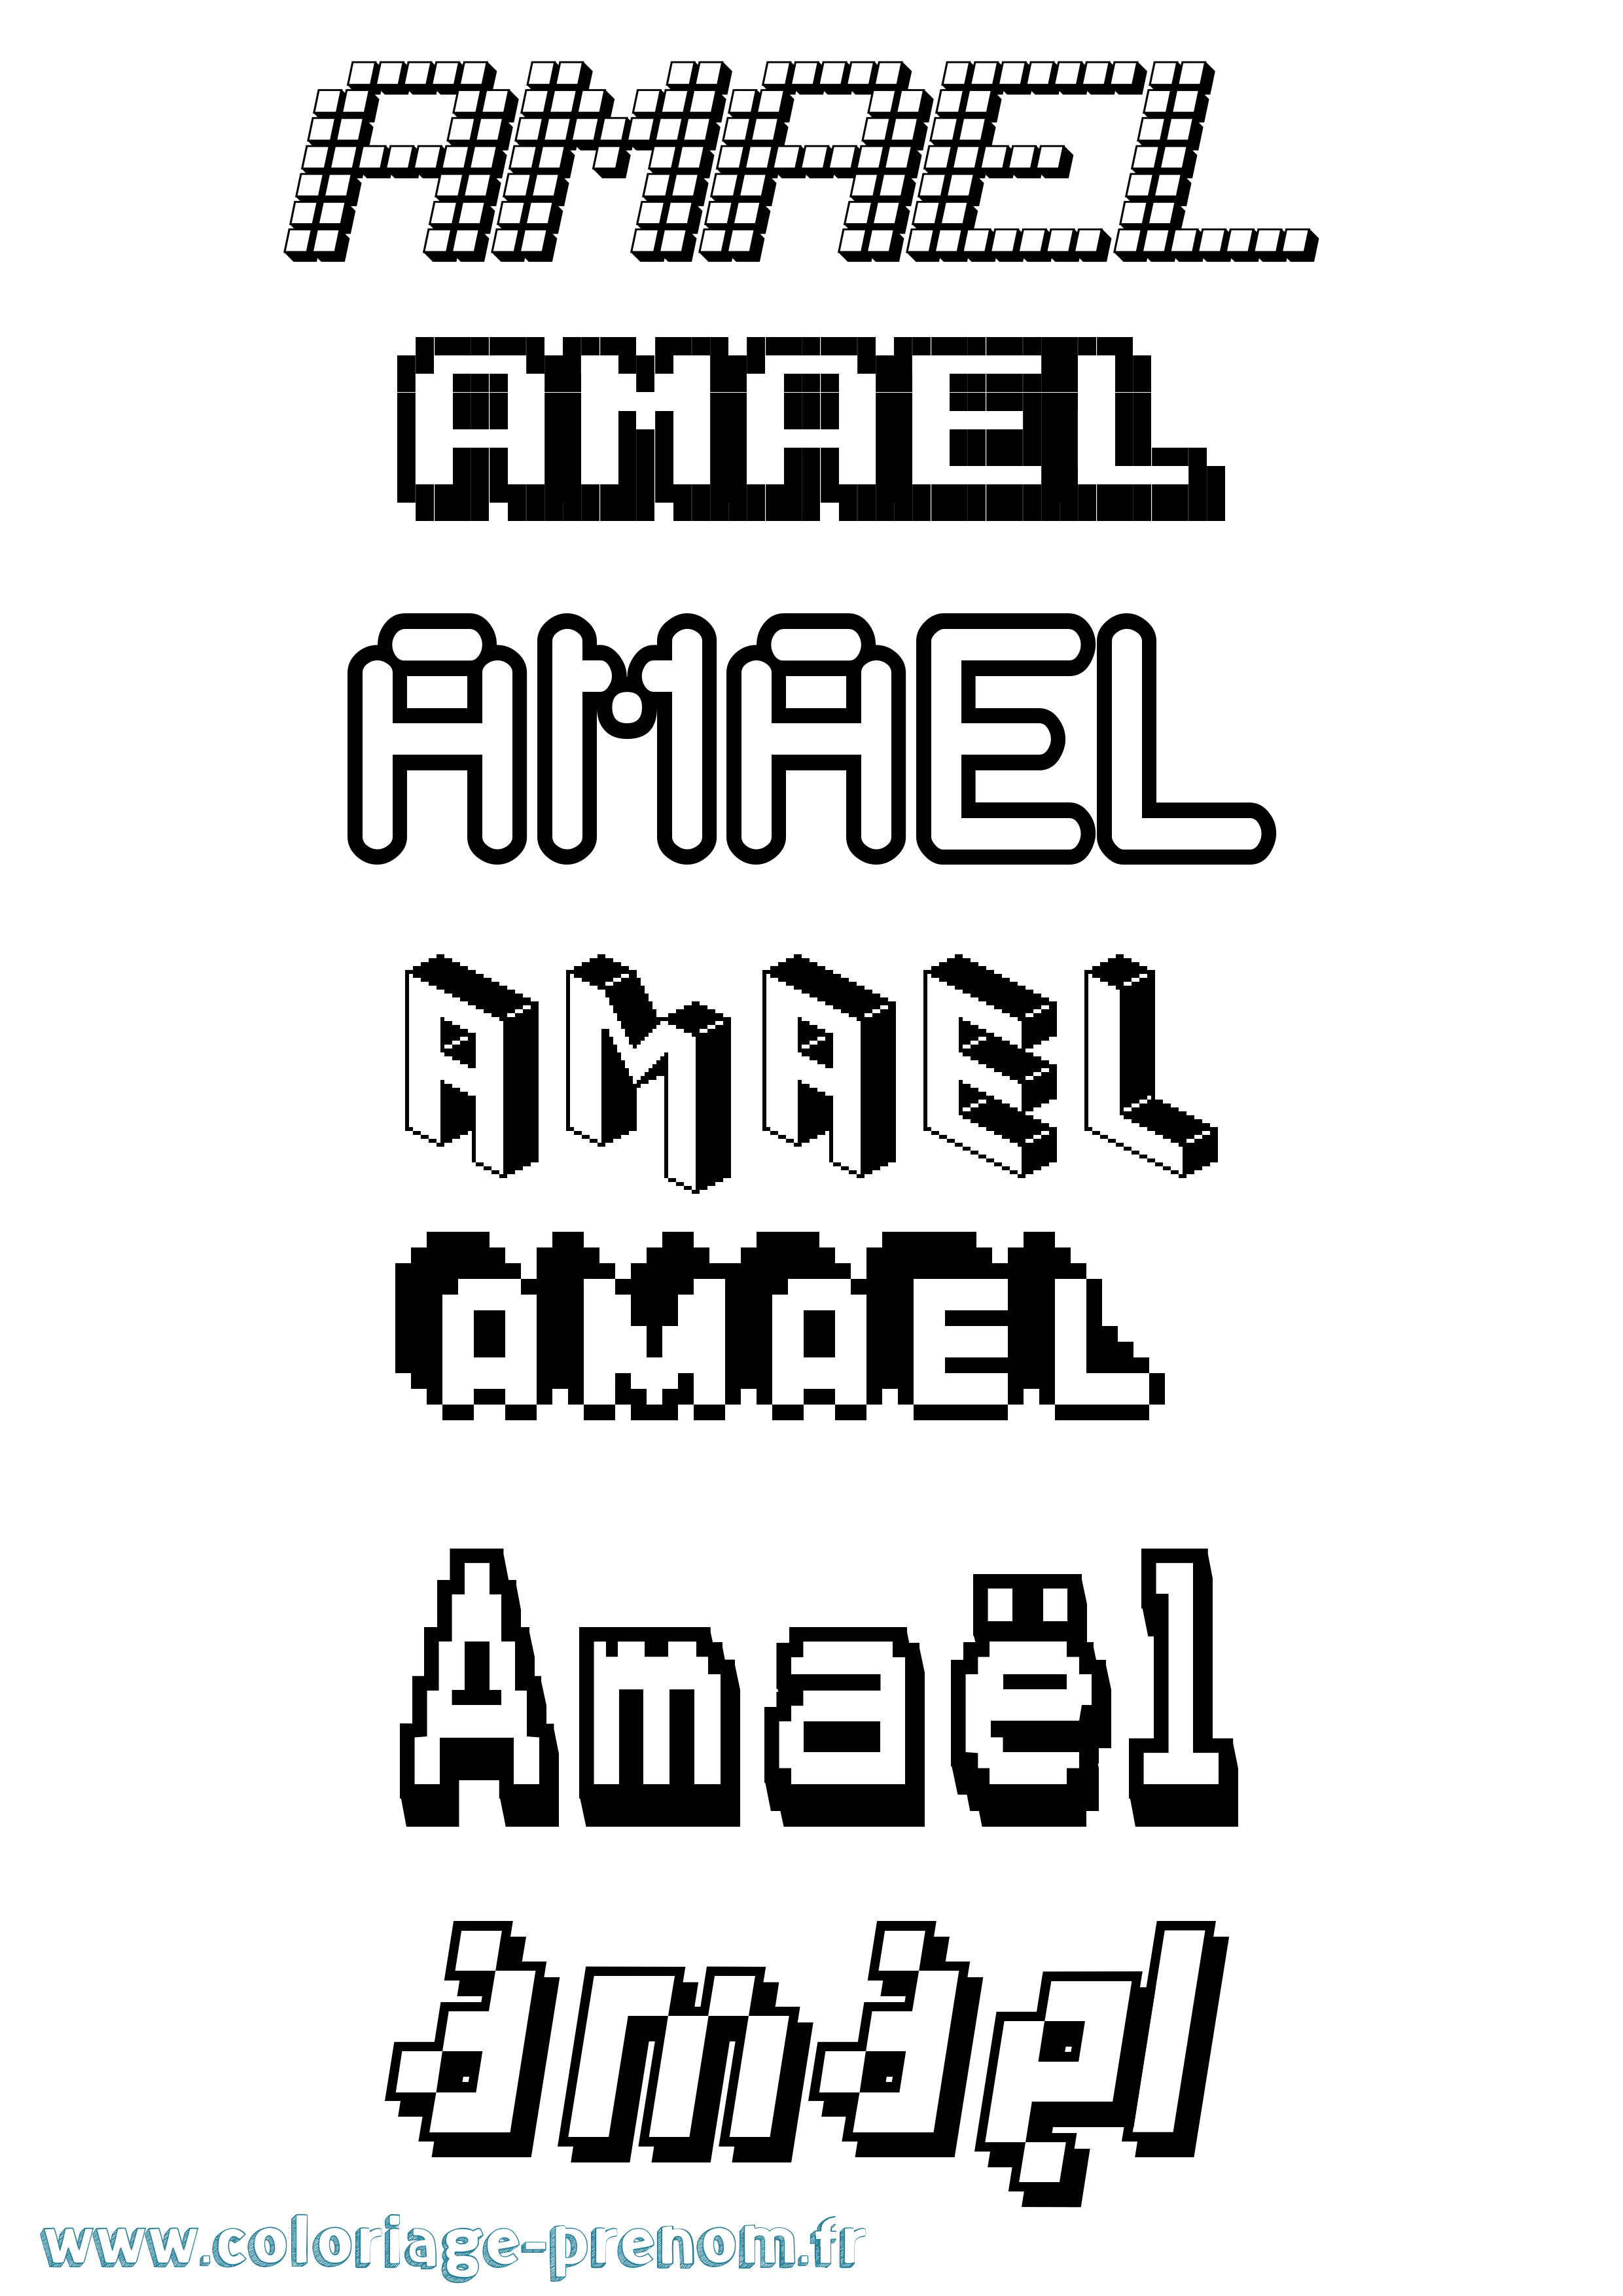 Coloriage prénom Amaël Pixel